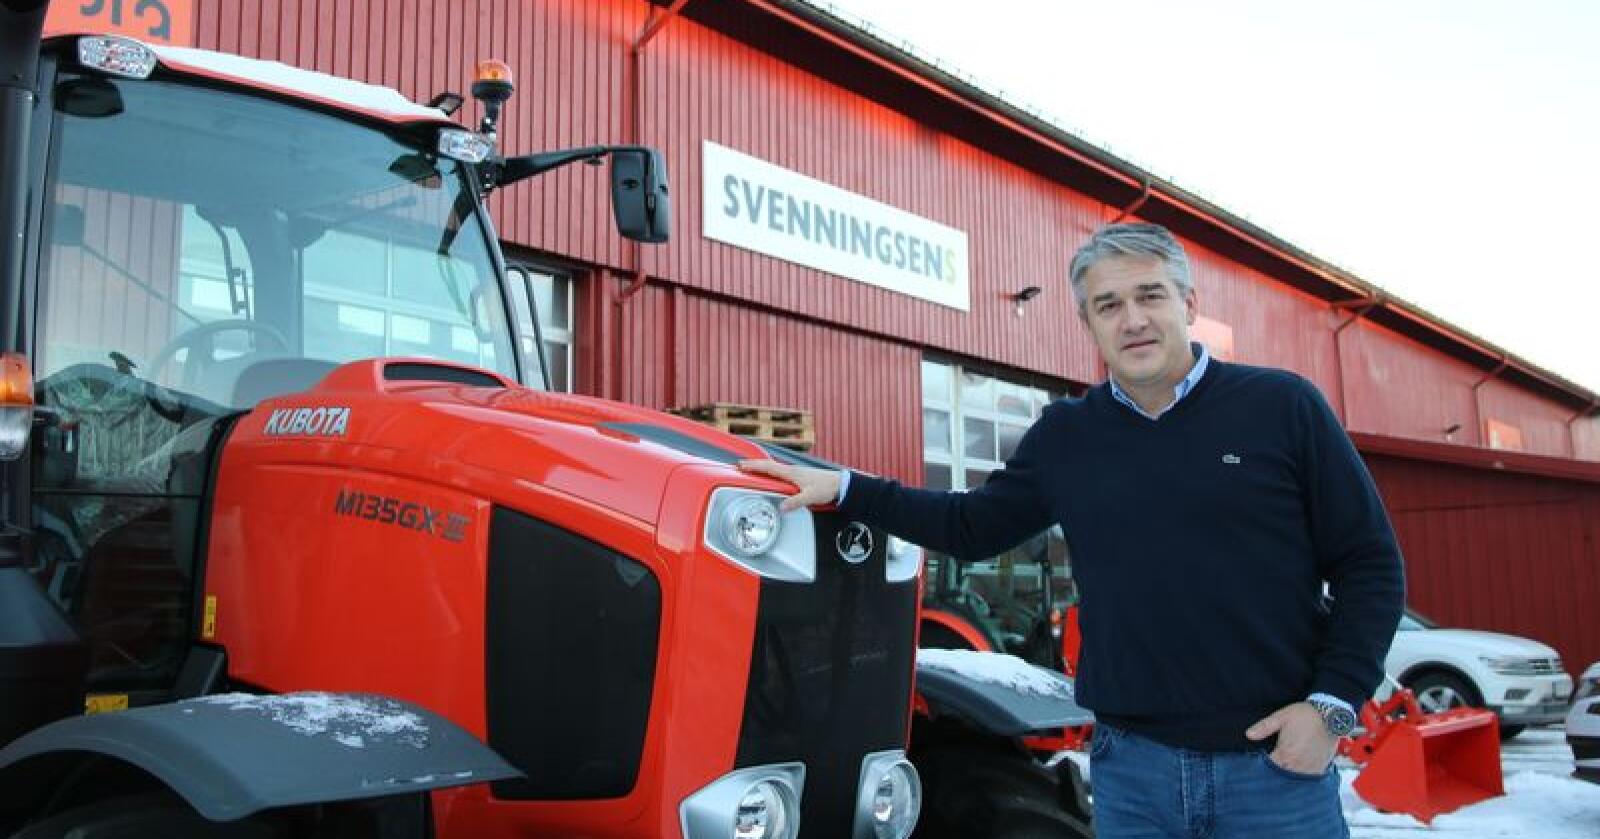 Kjetil Nilsson er ansatt som daglig leder hos Svenningsens. – 2019 blir et år for å stabilisere organisasjonen, sier han.